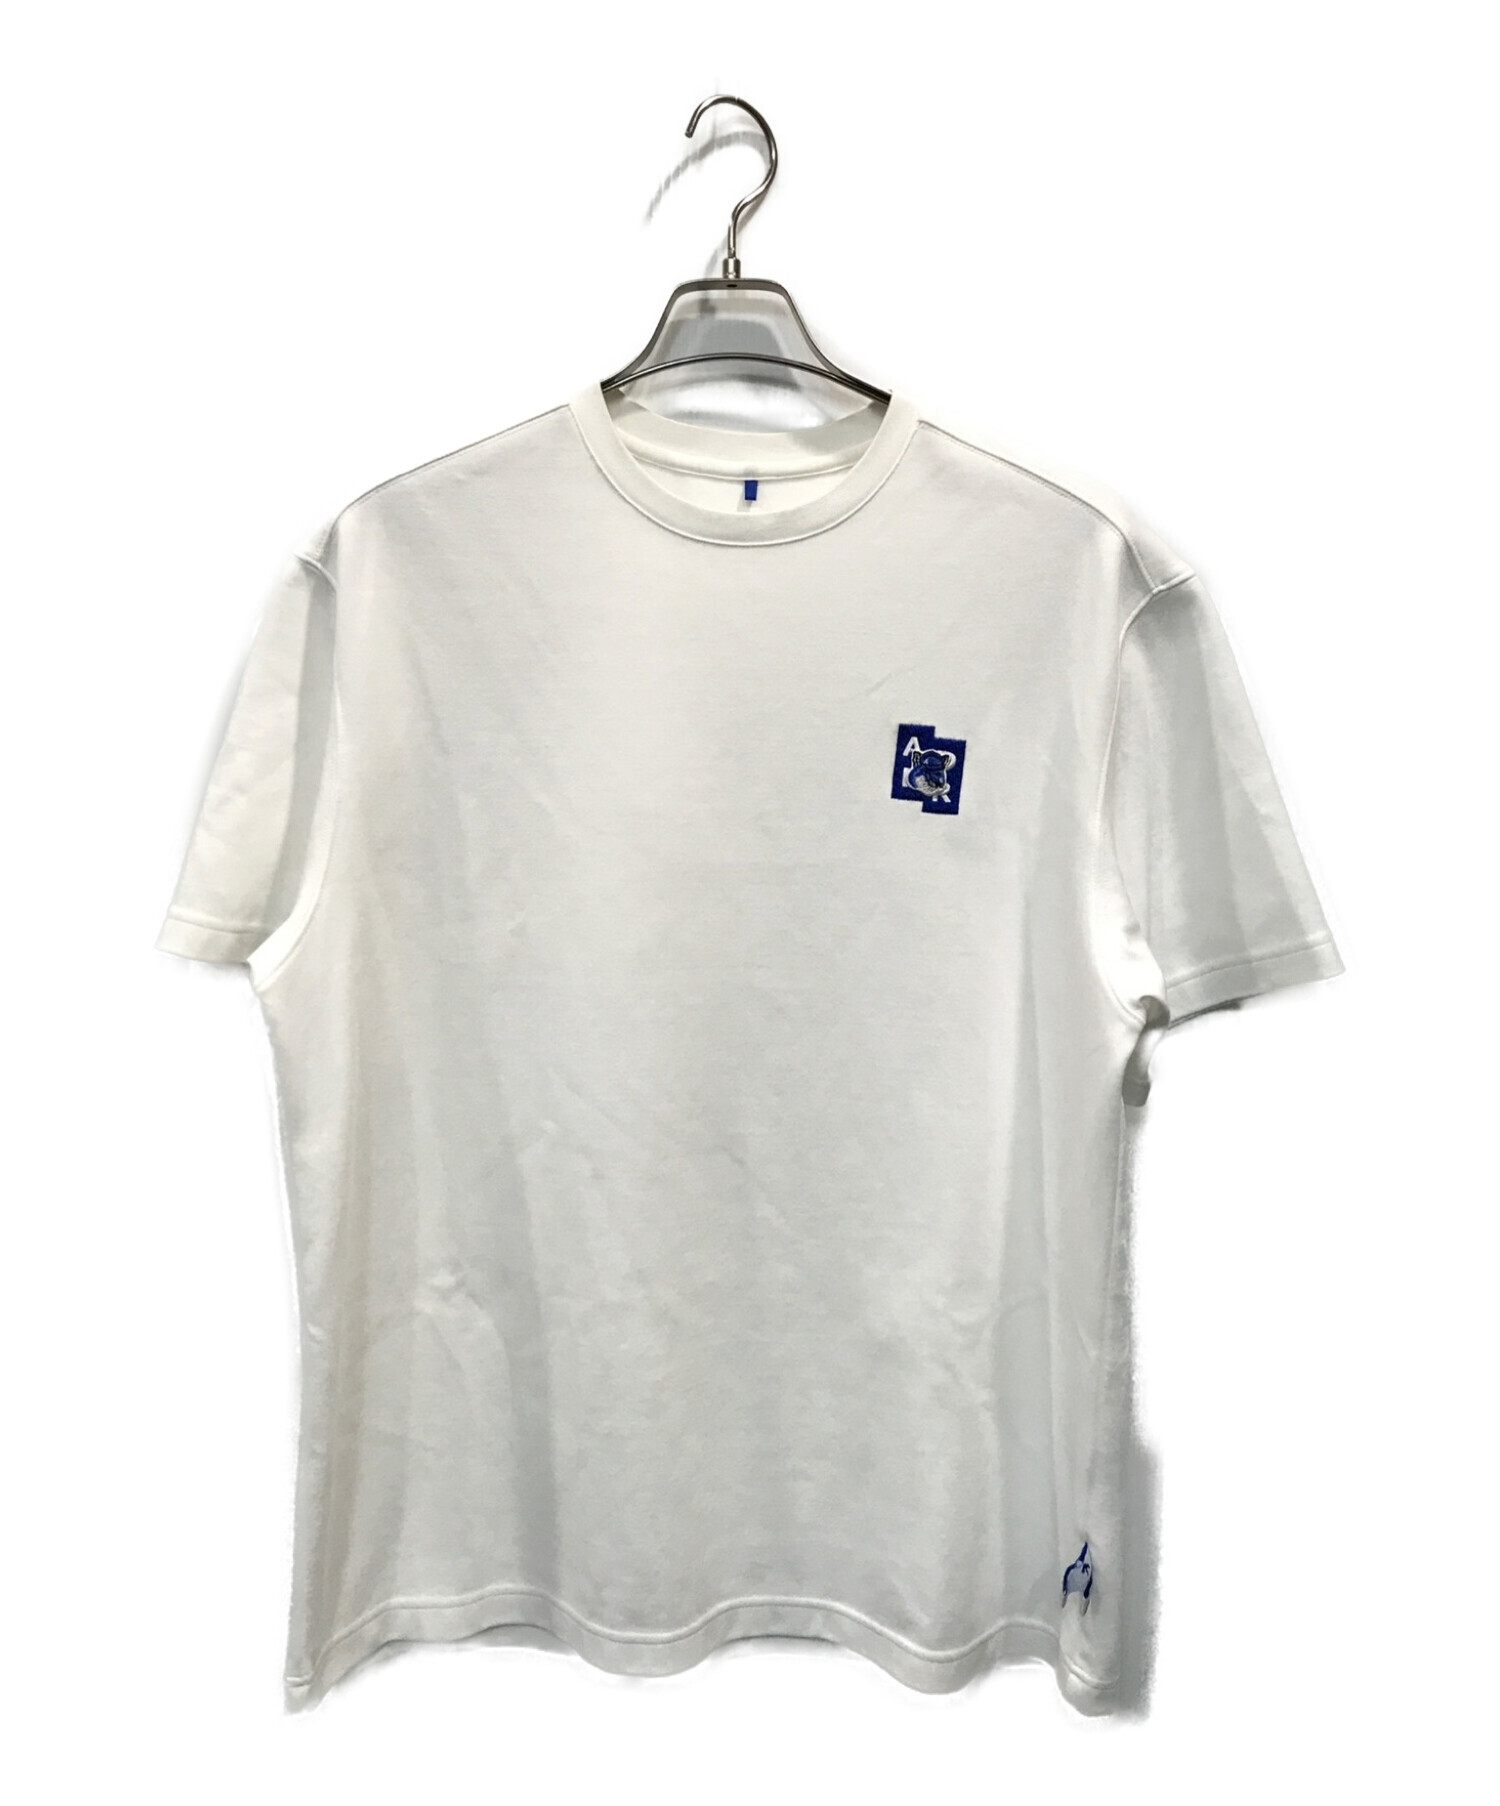 ADER error (アーダーエラー) MAISON KITSUNE (メゾンキツネ) Tetris blue fox t-shirt ホワイト  サイズ:A2